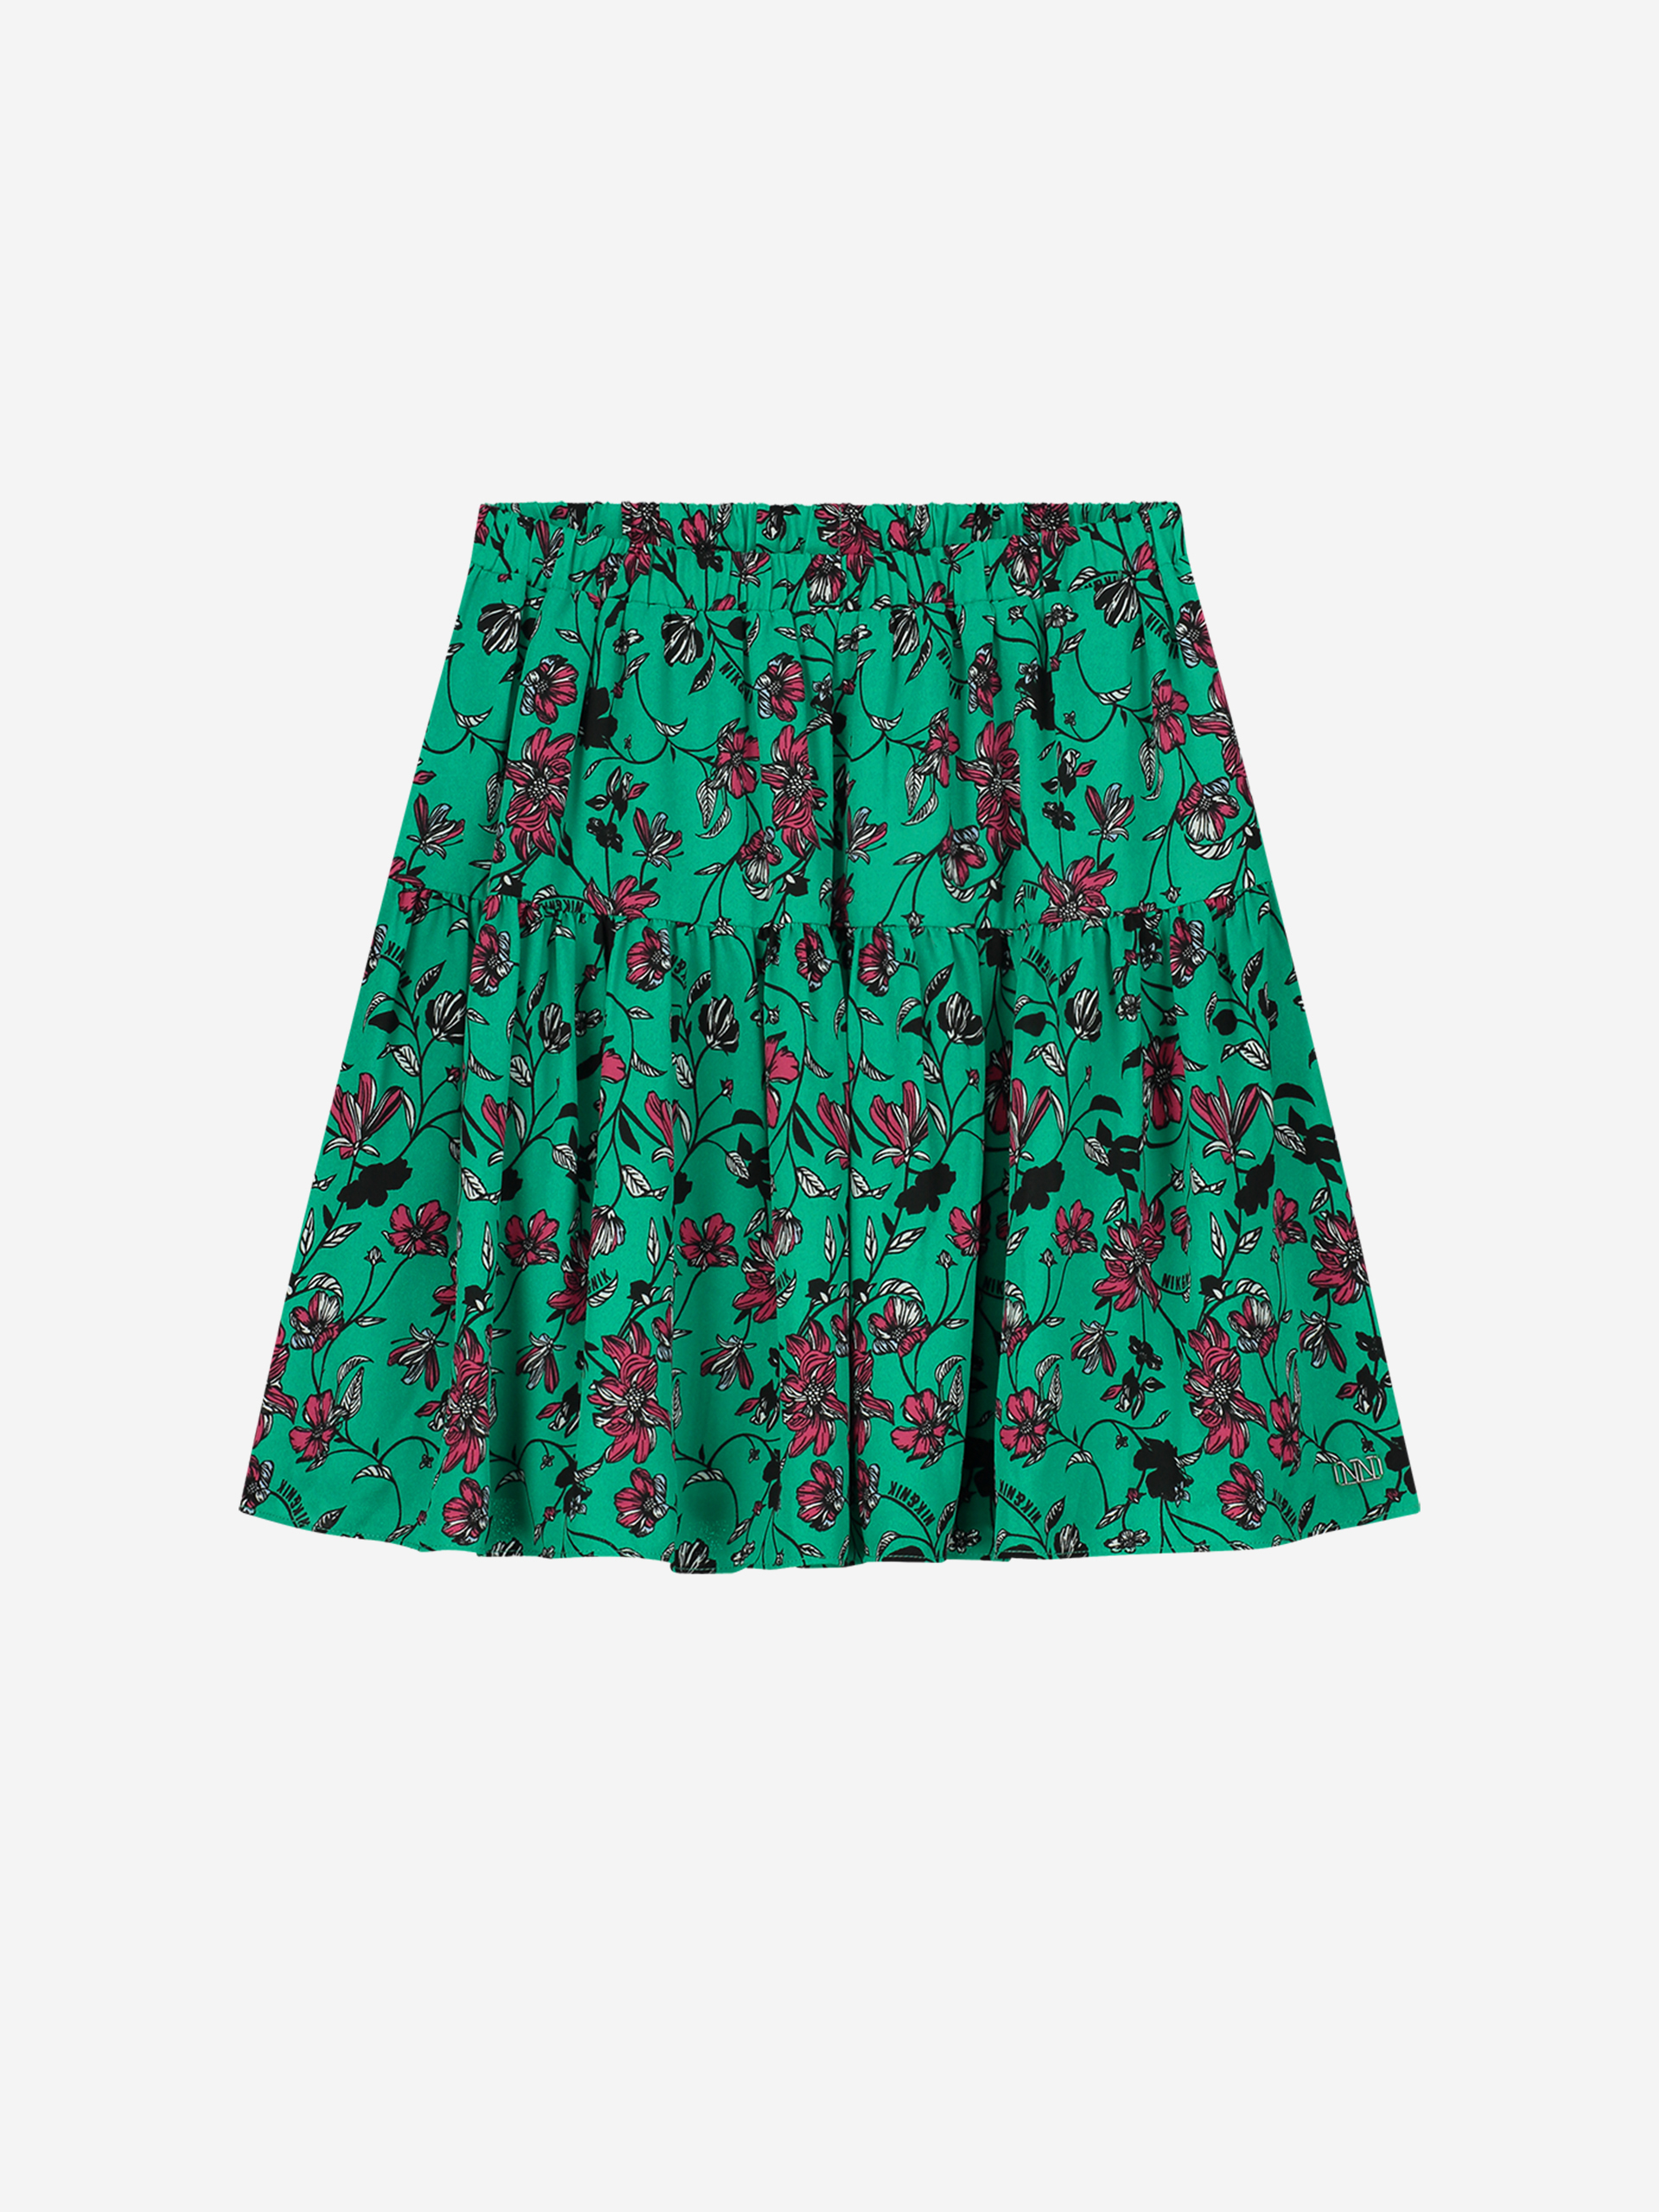  A-line skirt with elastic waistband